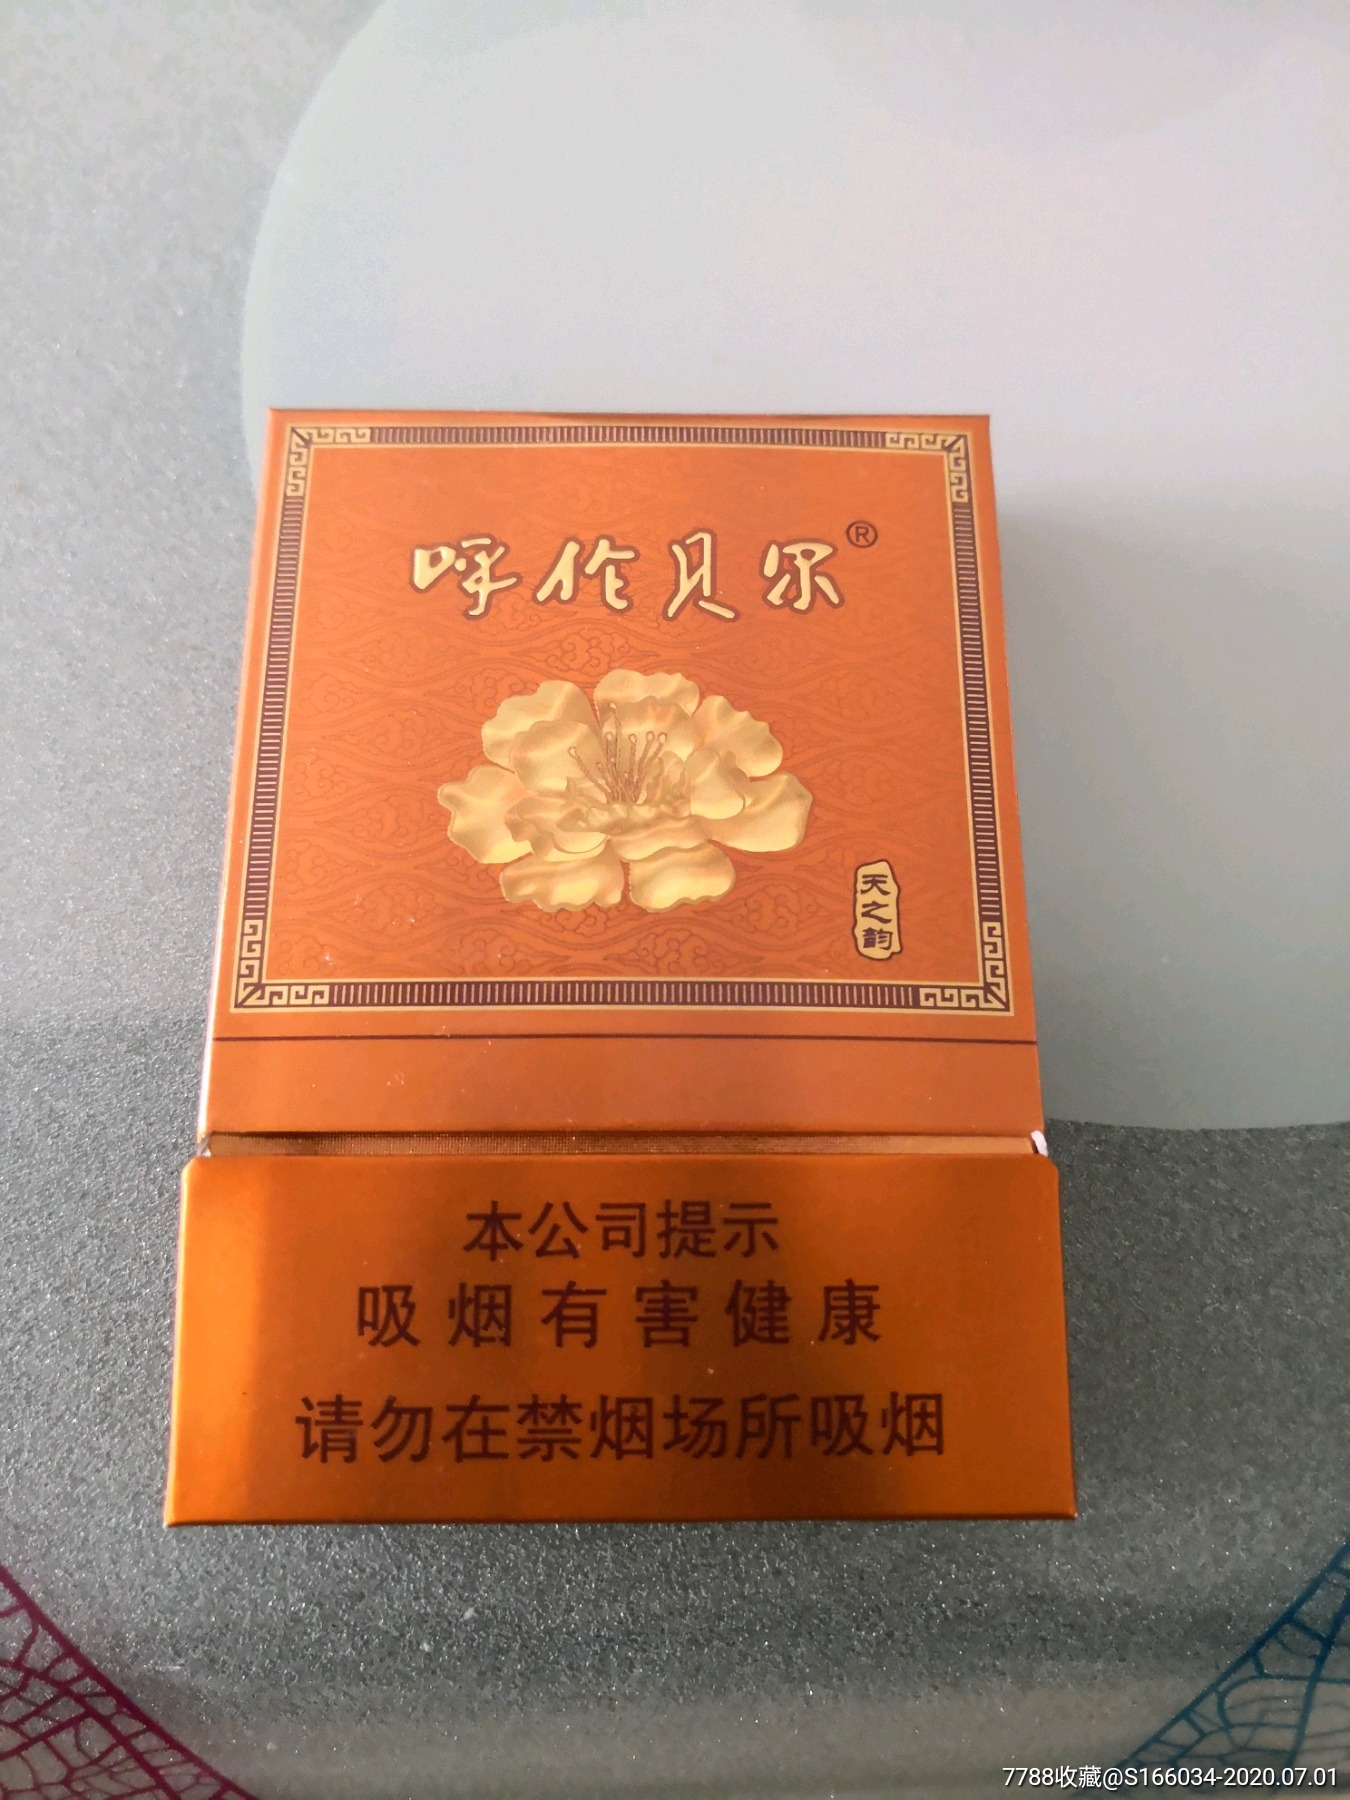 美宝-价格:1元-au32861248-烟标/烟盒 -加价-7788收藏__收藏热线